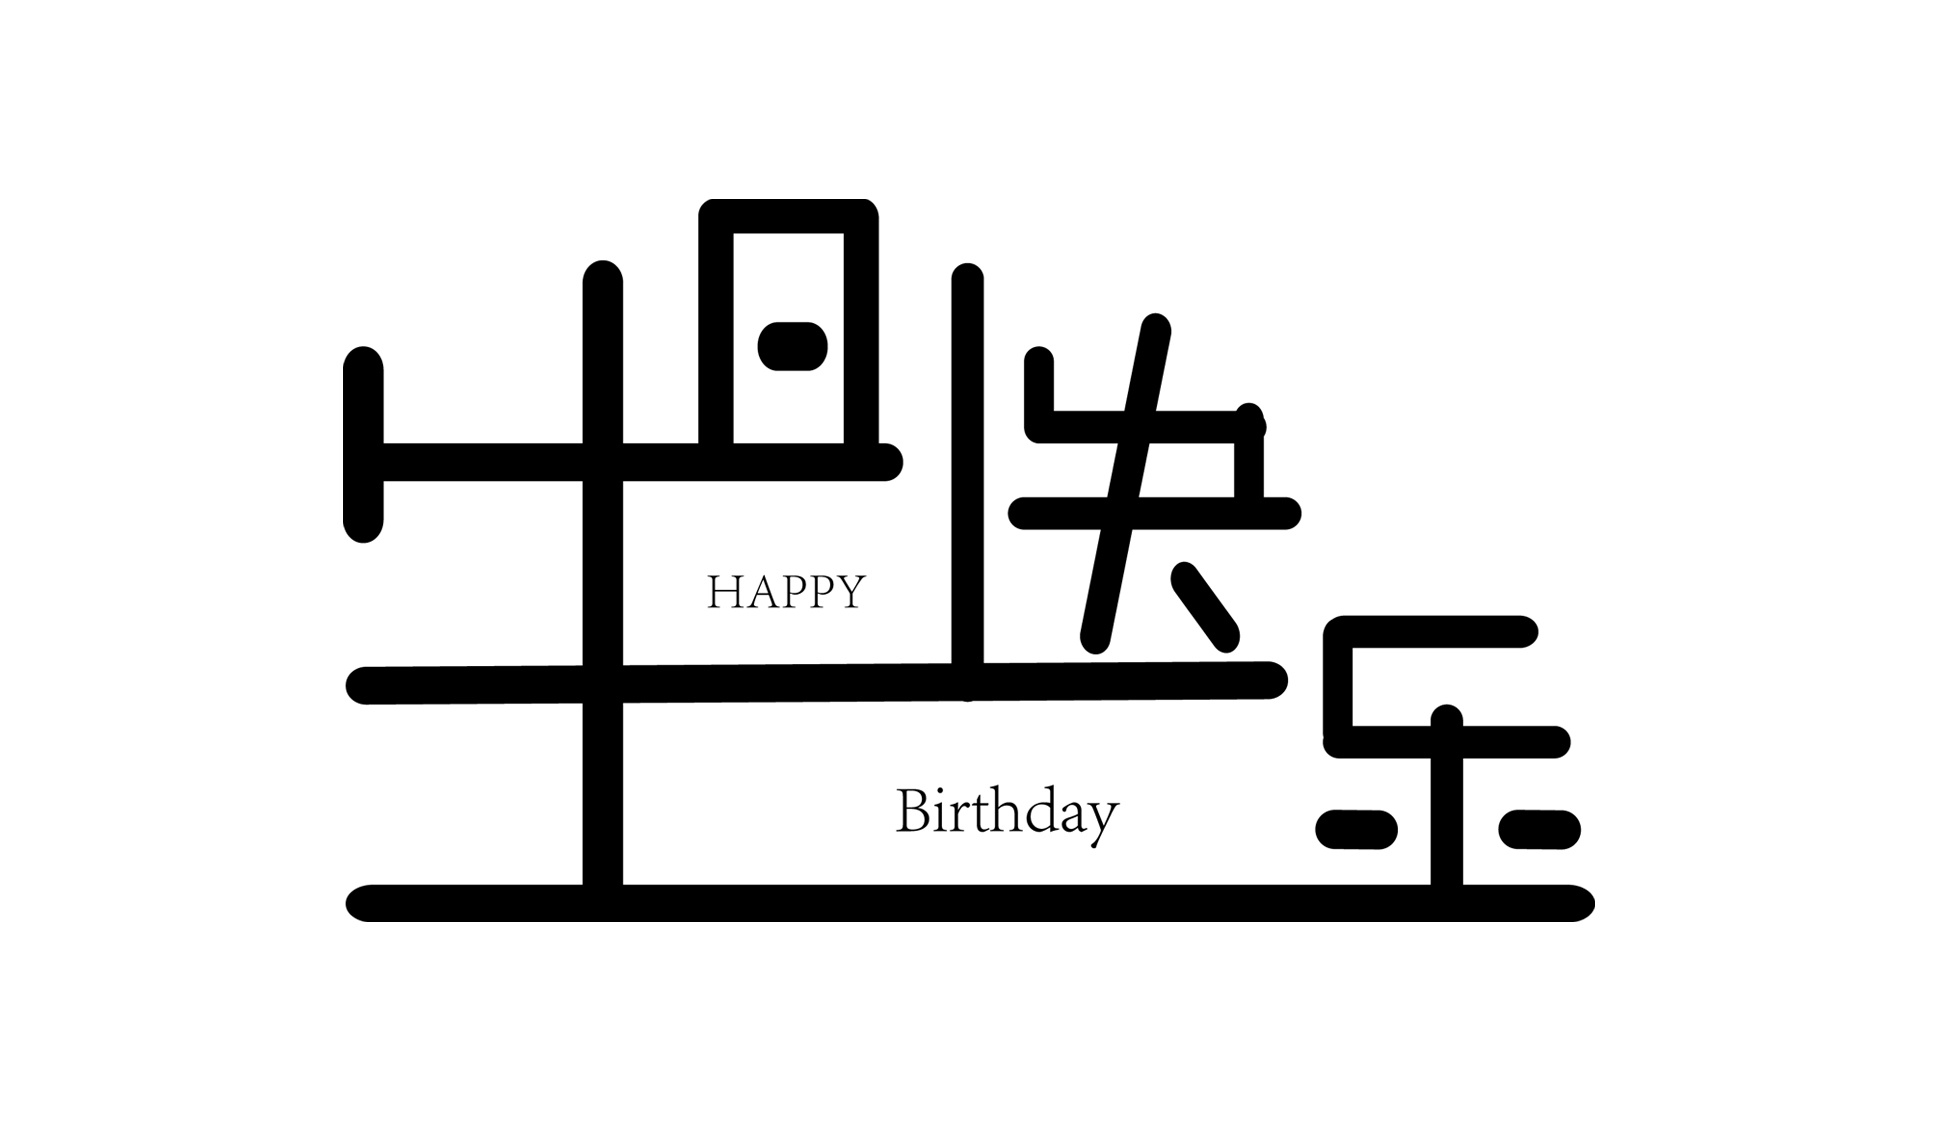 生日快乐蛋糕字体写法图片